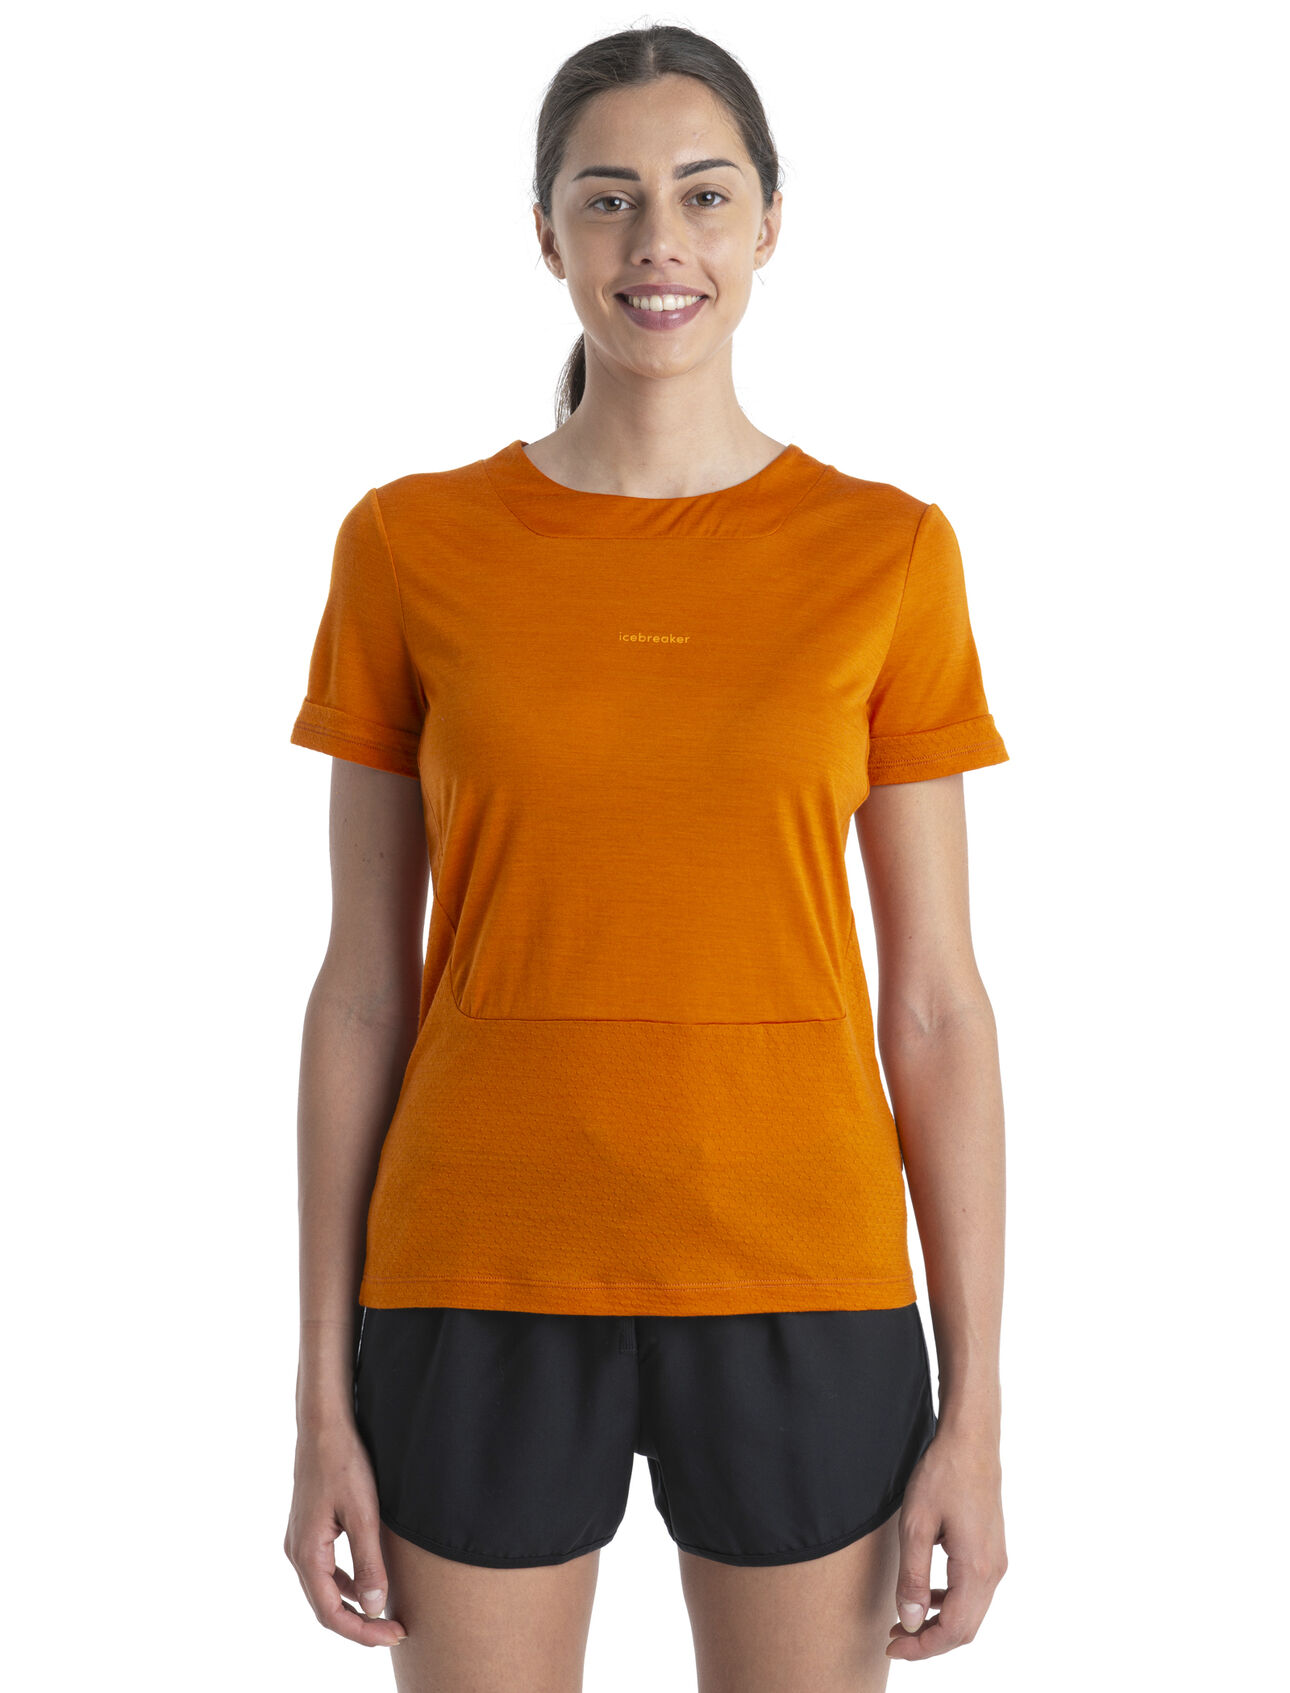 ZoneKnit™ Merino Kurzarmshirt Damen Unser atmungsaktivstes und leichtestes T-Shirt für bewegungsintensive Aktivitäten, das ZoneKnit™ T-Shirt überzeugt durch eine saubere Schnittführung und Mesh-Einsätze, die den Temperaturausgleich des Körpers unterstützen.